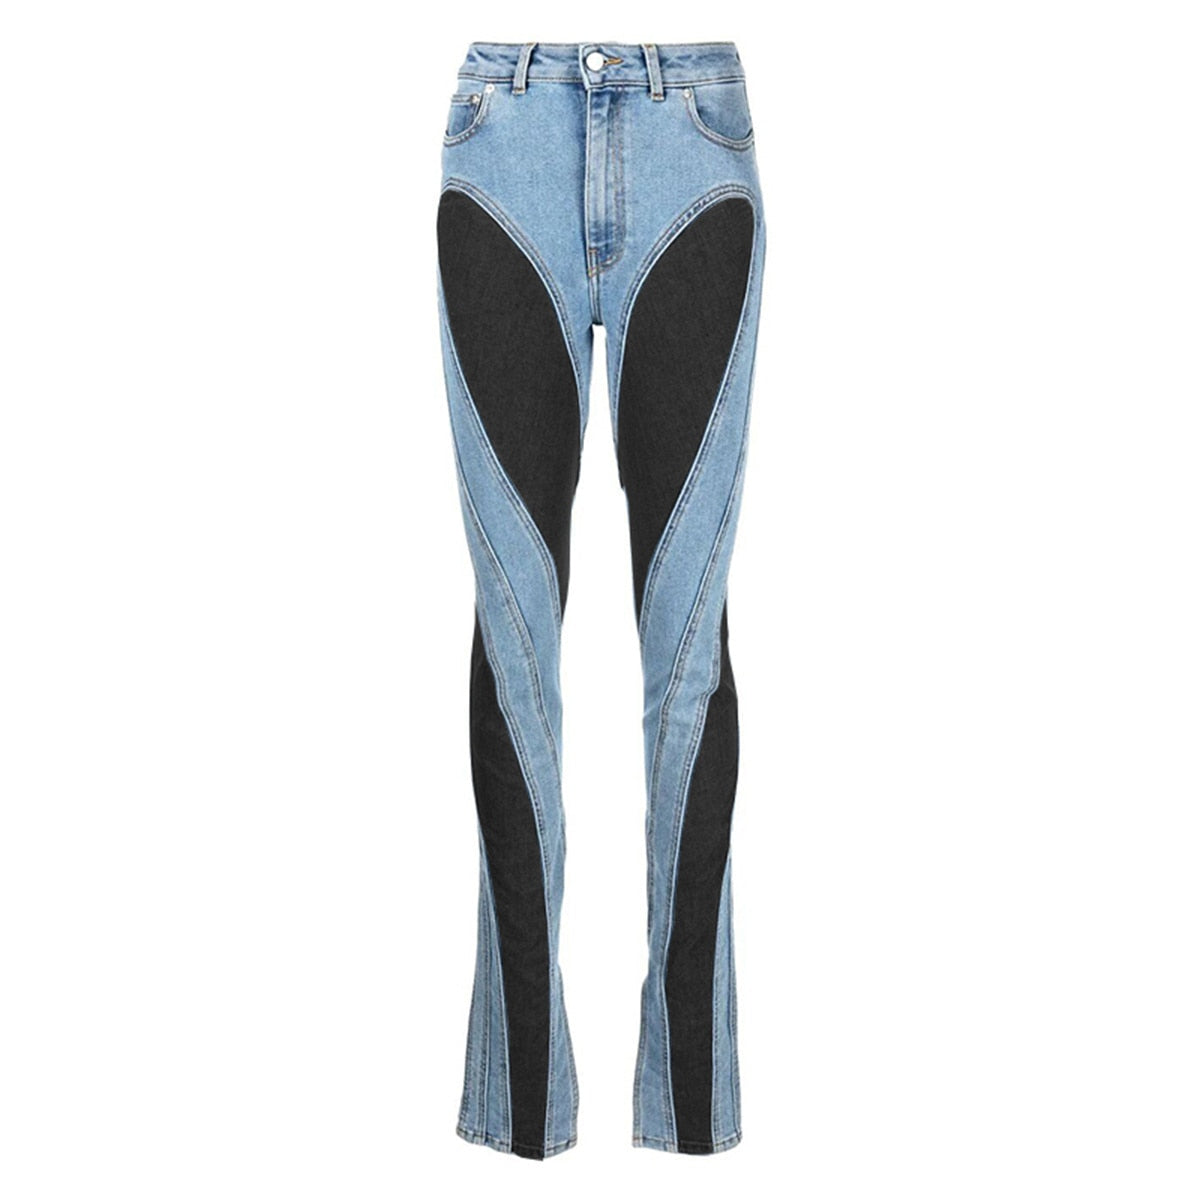 DEAT Fashion jeans Slim Deconstruct Panelled Patchwork High Waist Split Blue Long Denim Pants Autumn